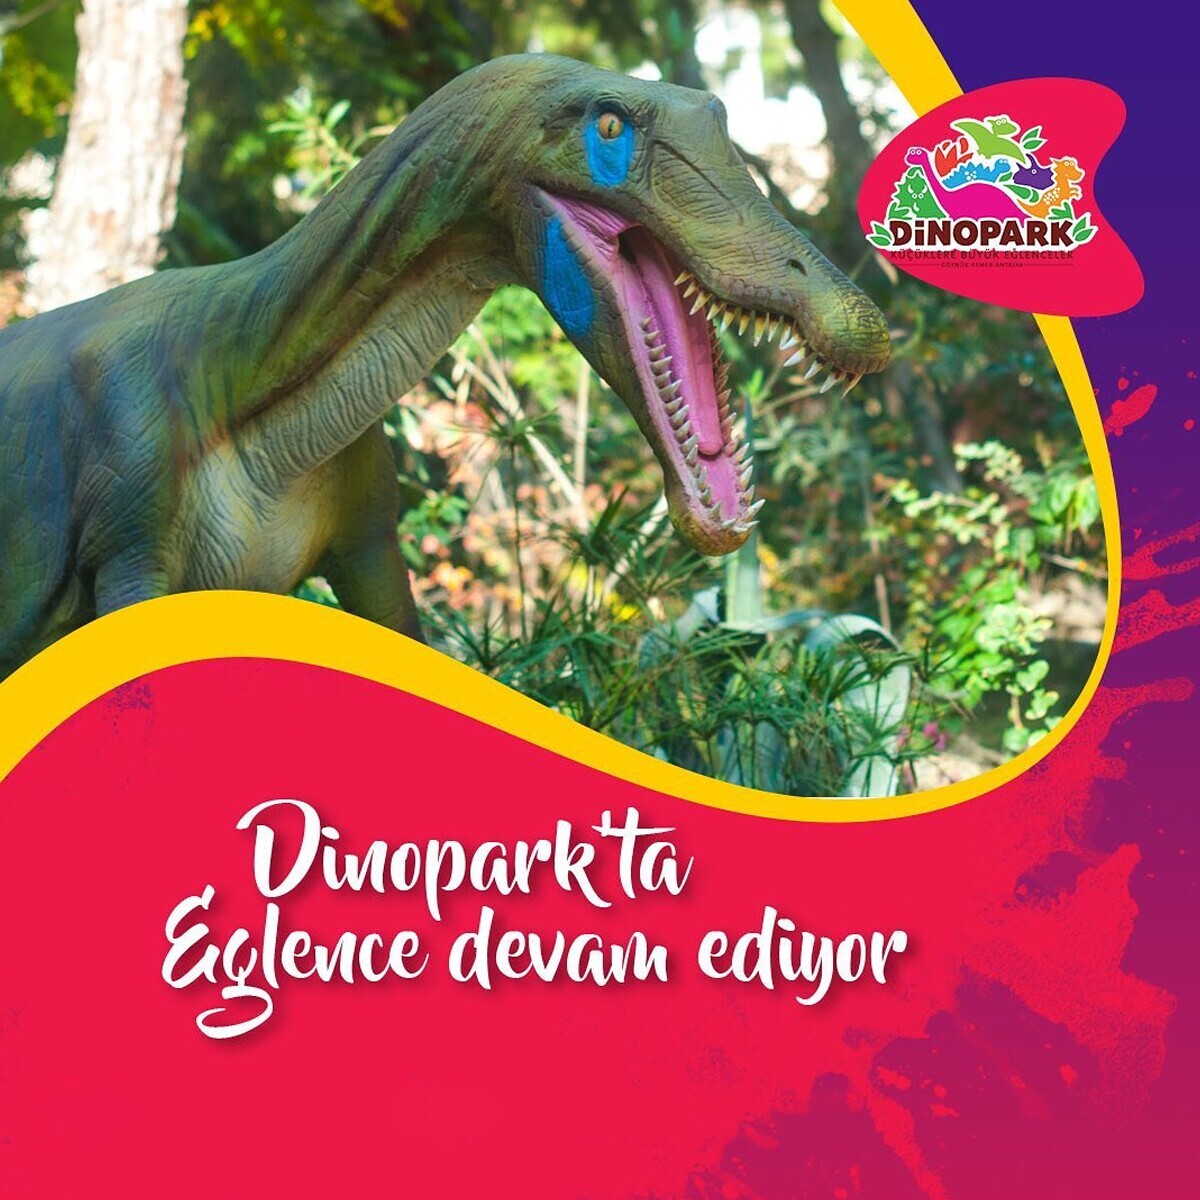 Göynük Dinosera - Dinogül Bahçesi'nde Doyasıya Eğlenceye Giriş Biletleri